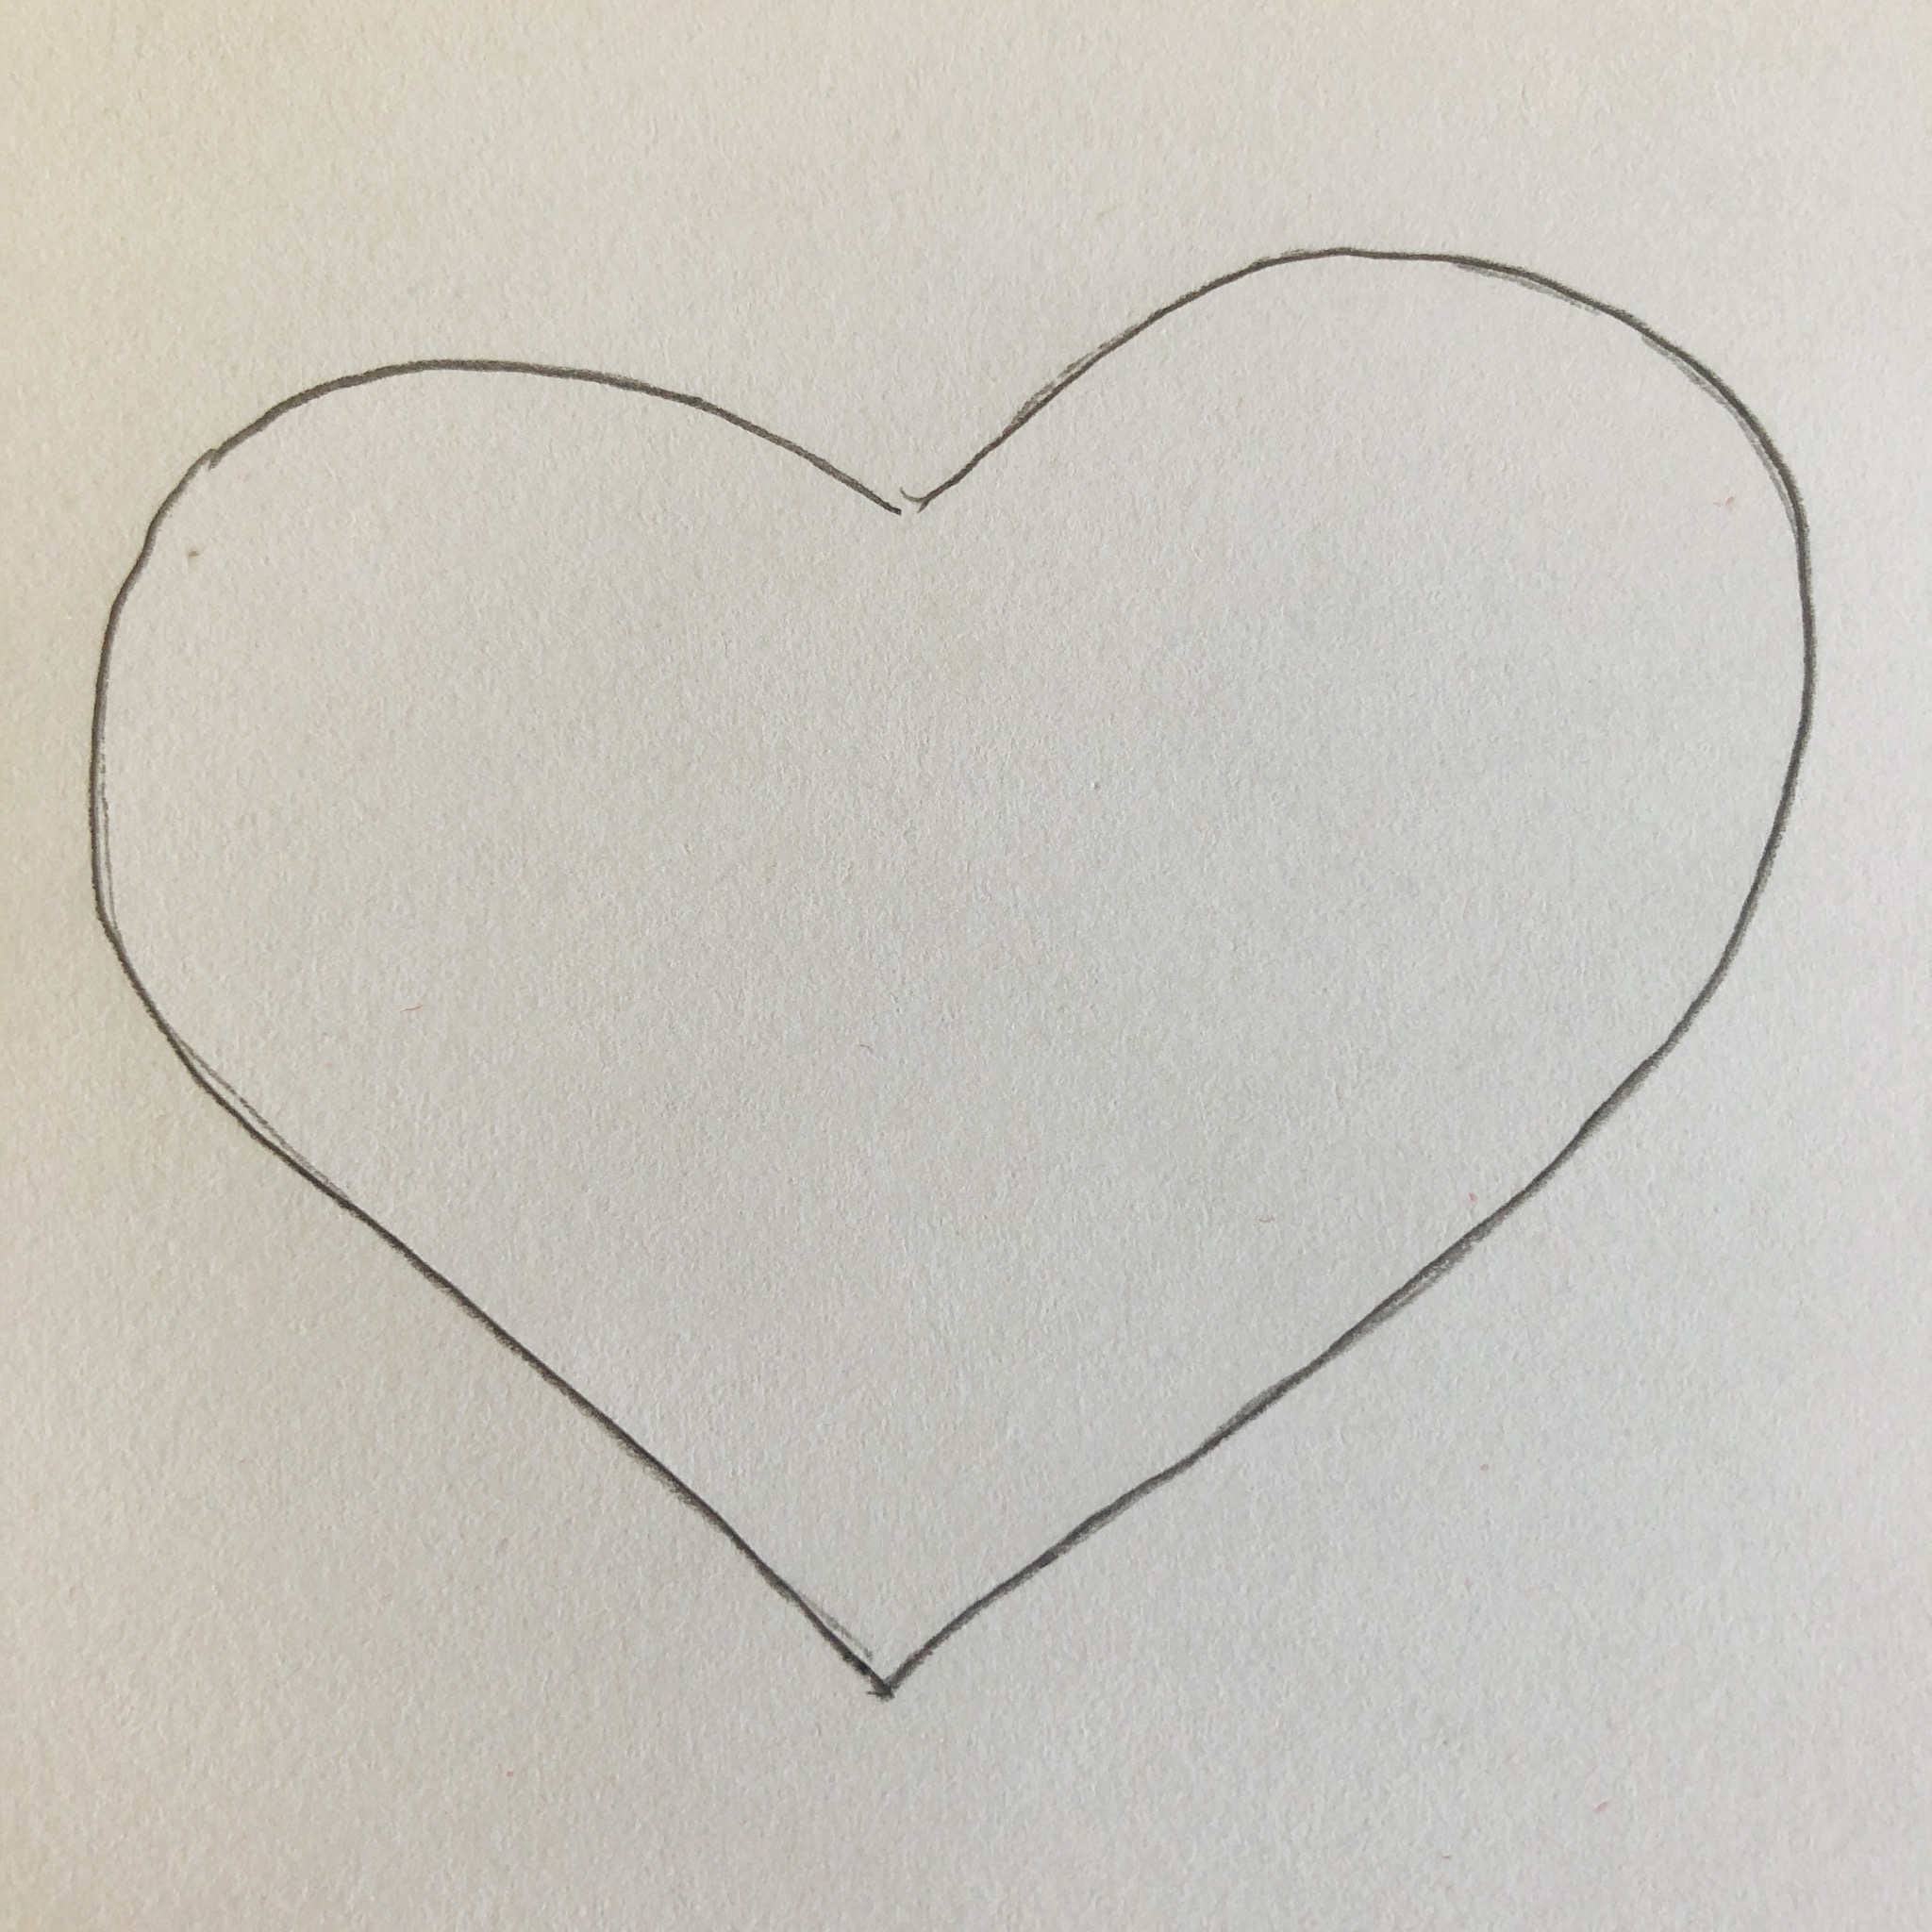 Bild zum Schritt 1 für das Bastel- und DIY-Abenteuer für Kinder: 'Herzschablone herstellen.'